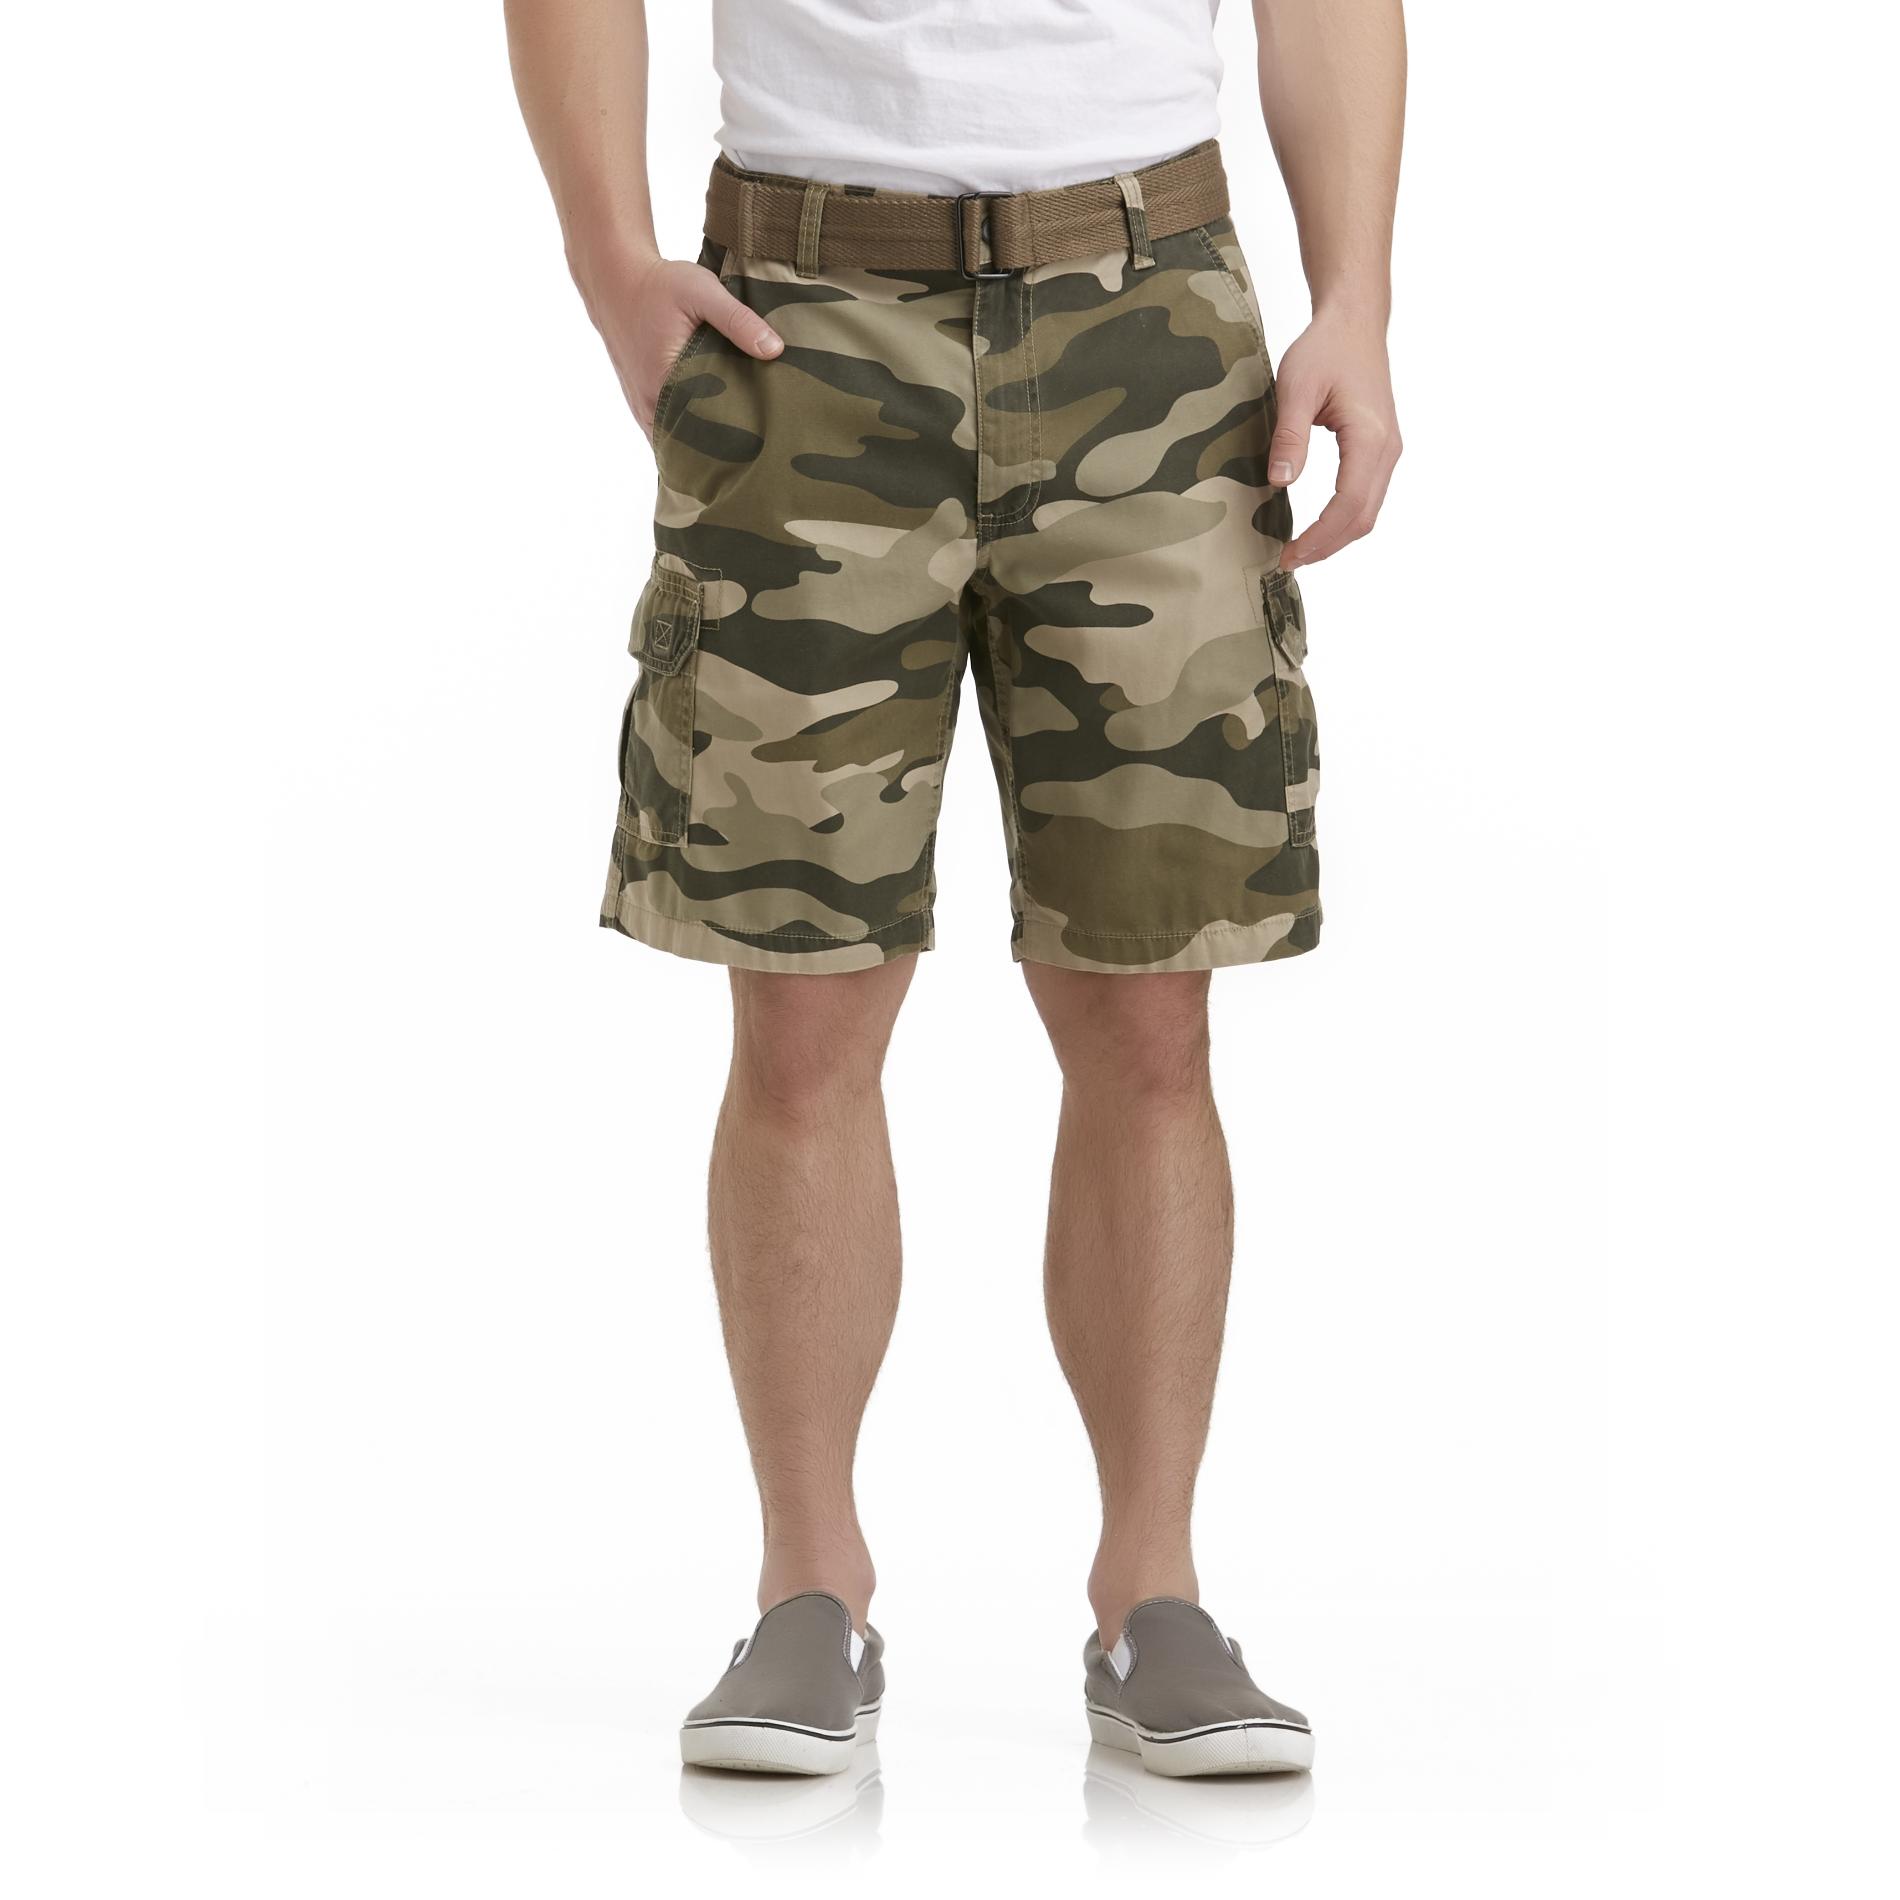 Basic Editions Men's Cargo Shorts & Belt - Camouflage